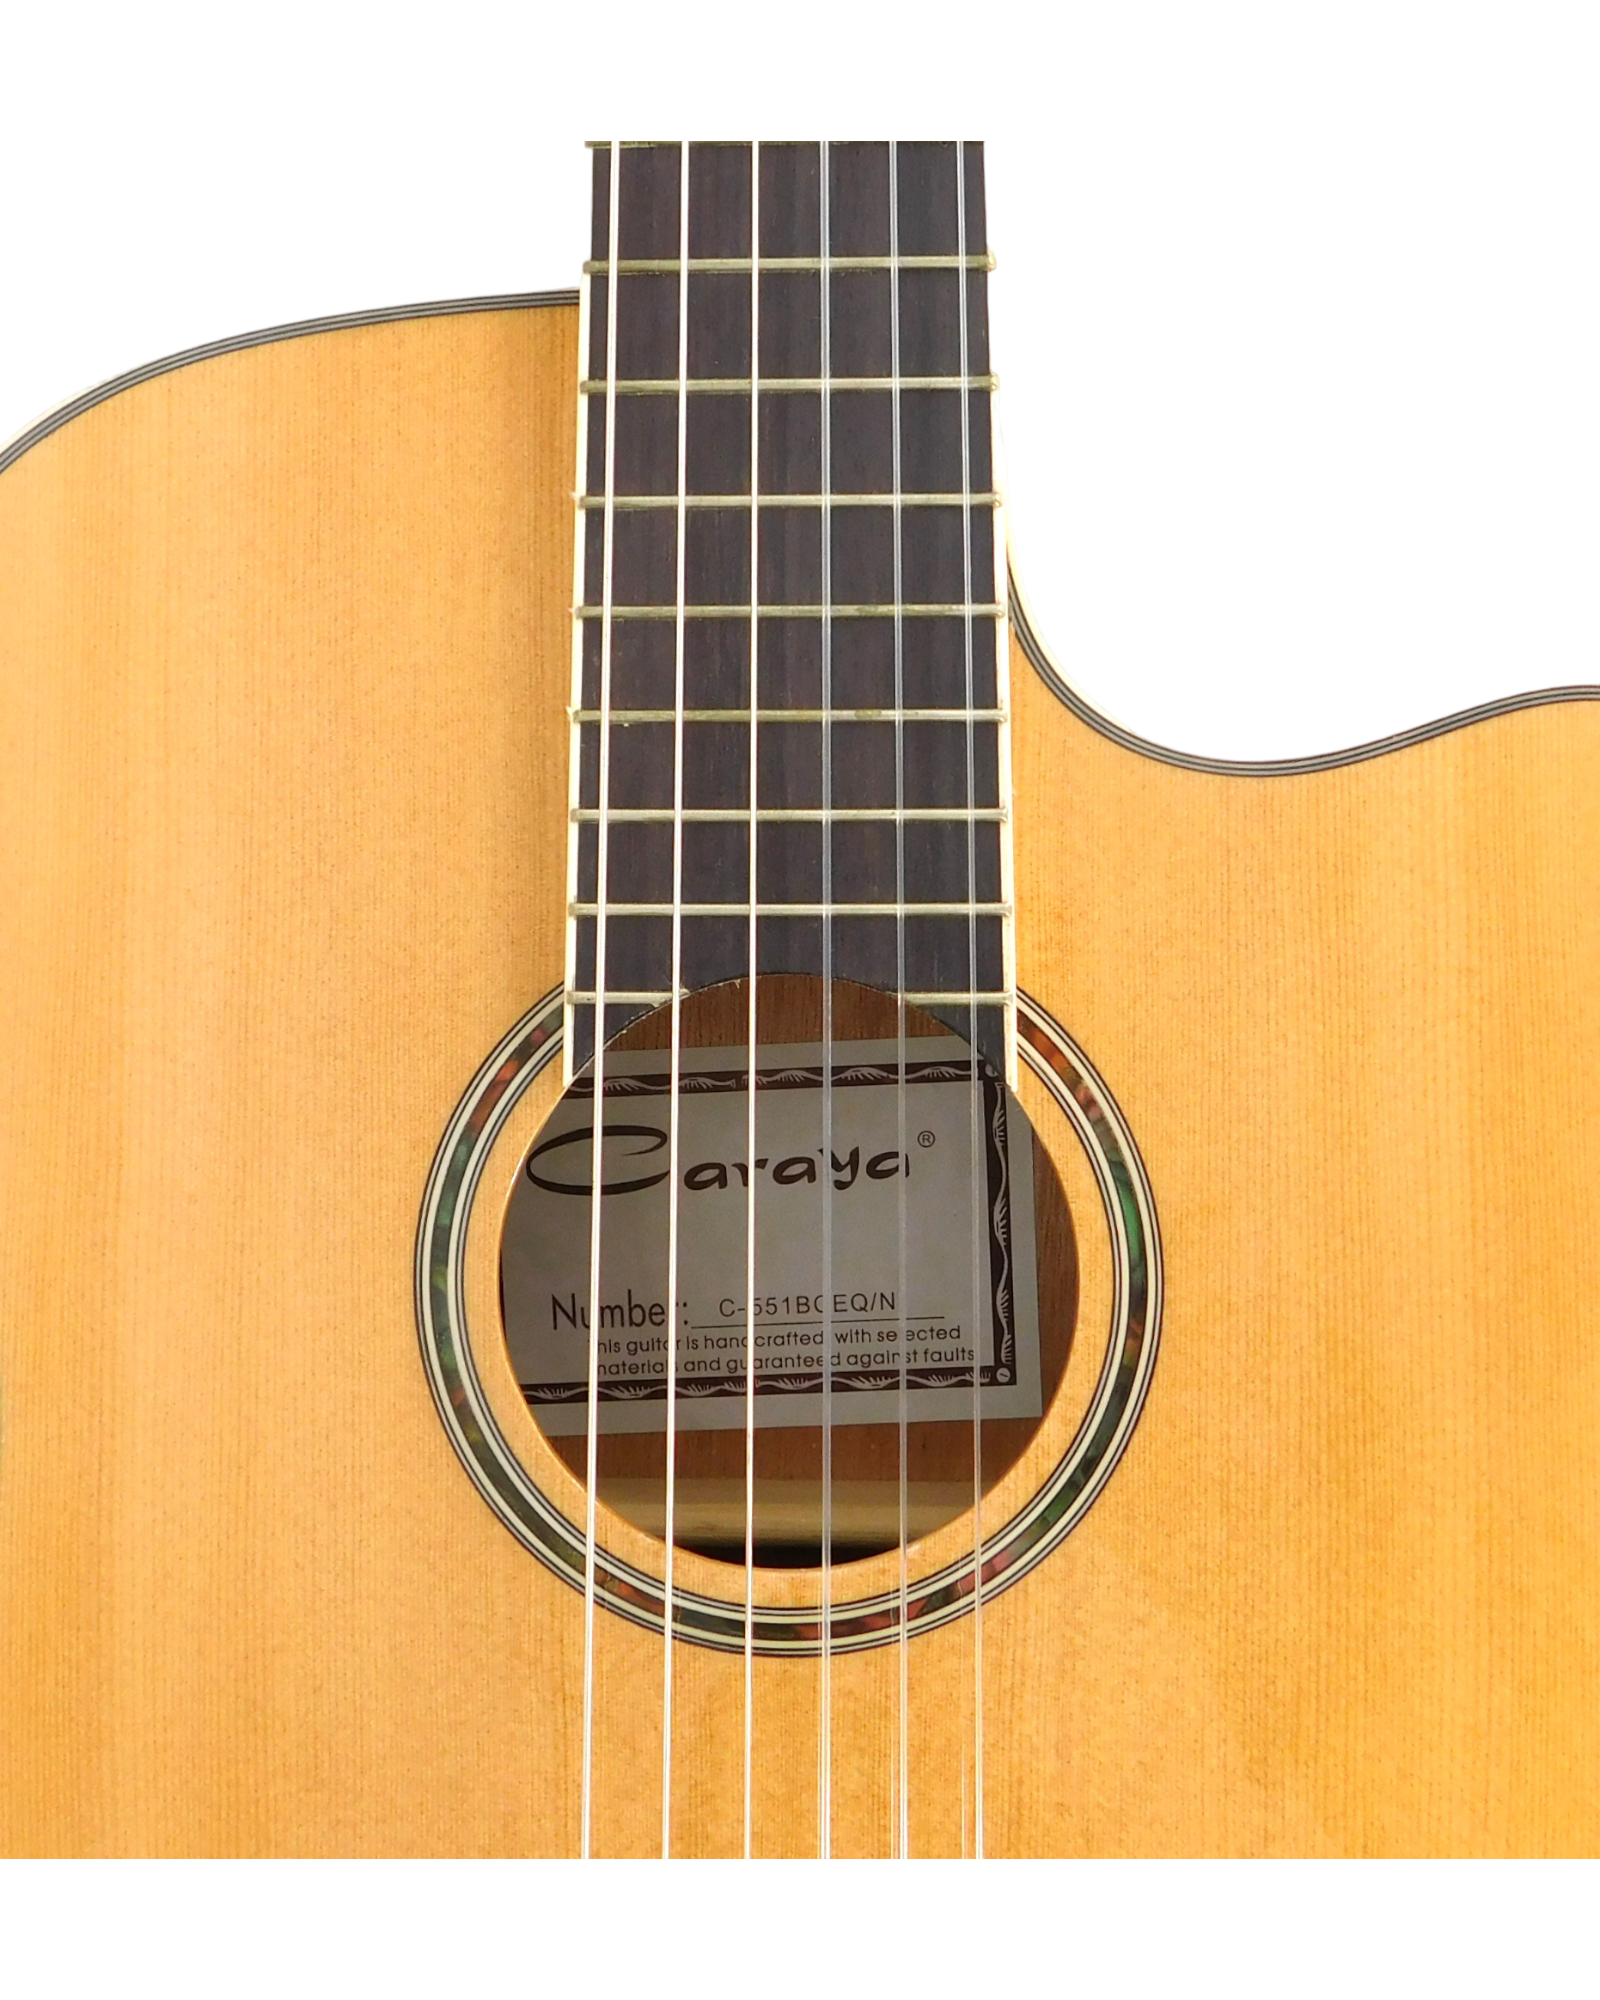 4/4 Caraya Thin-Body Classical Guitar w/Truss Rod,EQ+Free Bag C-551BCEQ/N